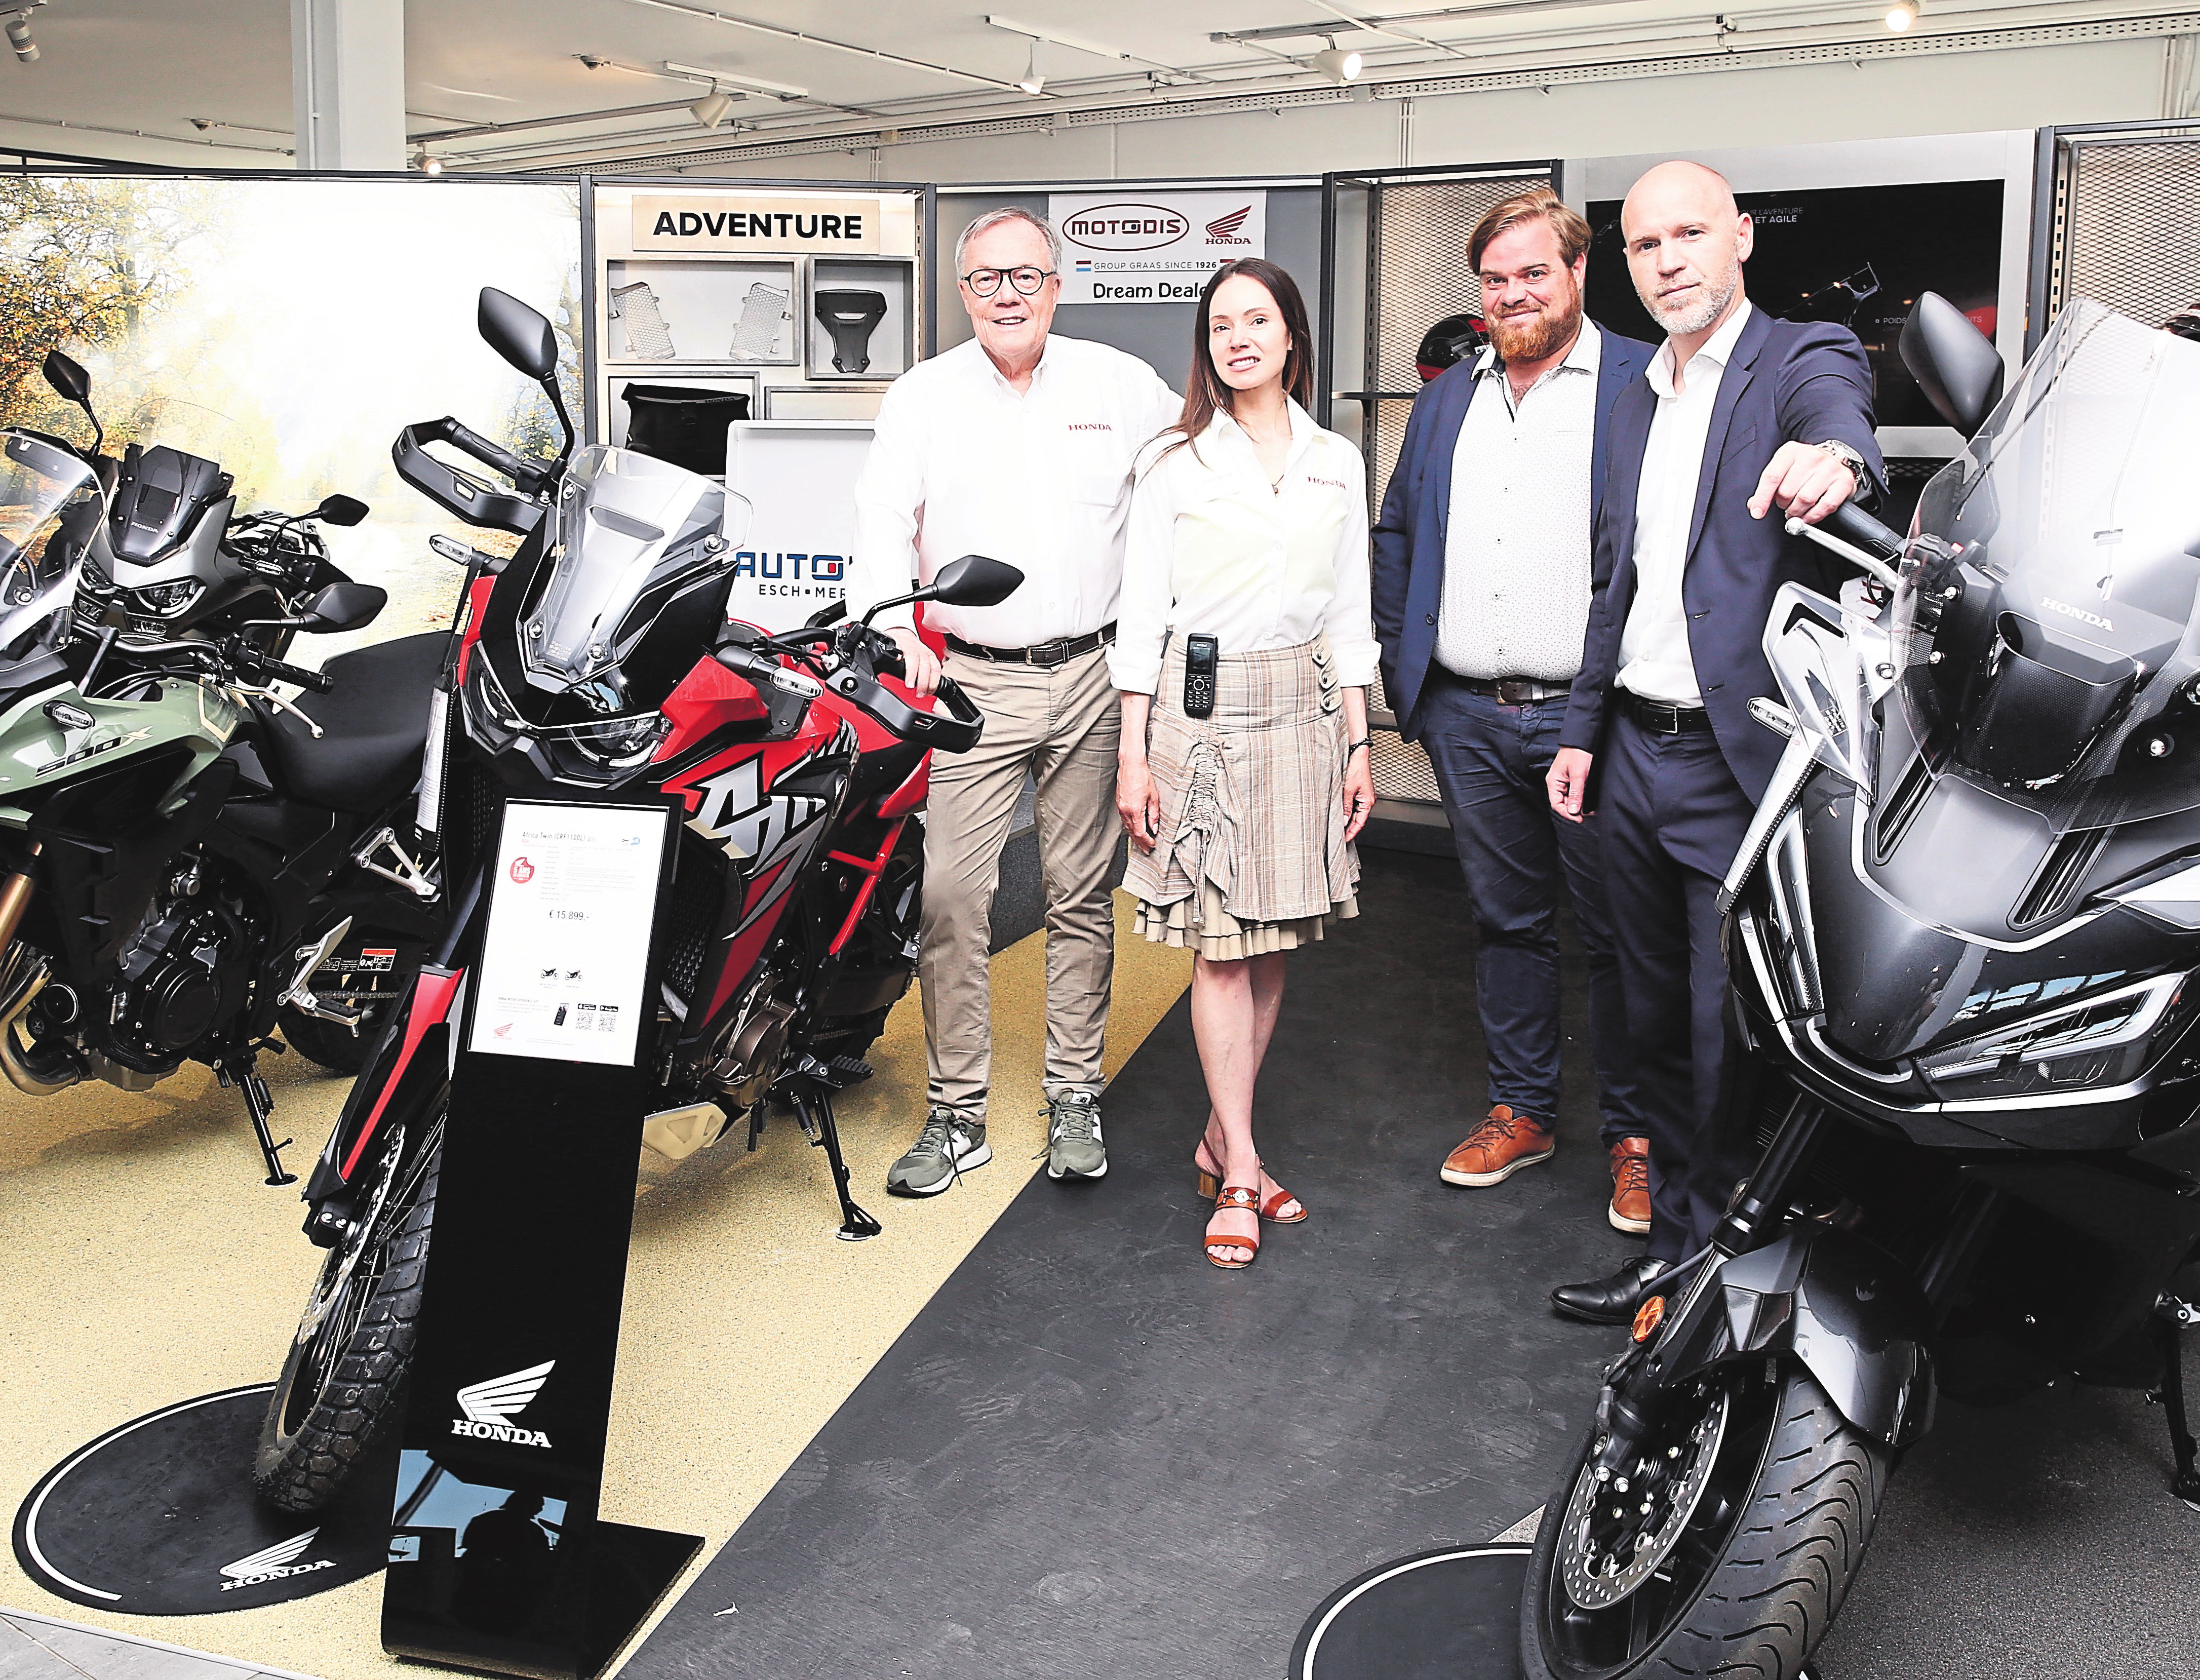 De gauche à droite: Marc Graas, son épouse Alicia, Vincent Moreau et Vincent Verhulsel pour Honda Belgique dans la salle d'exposition Adventure.